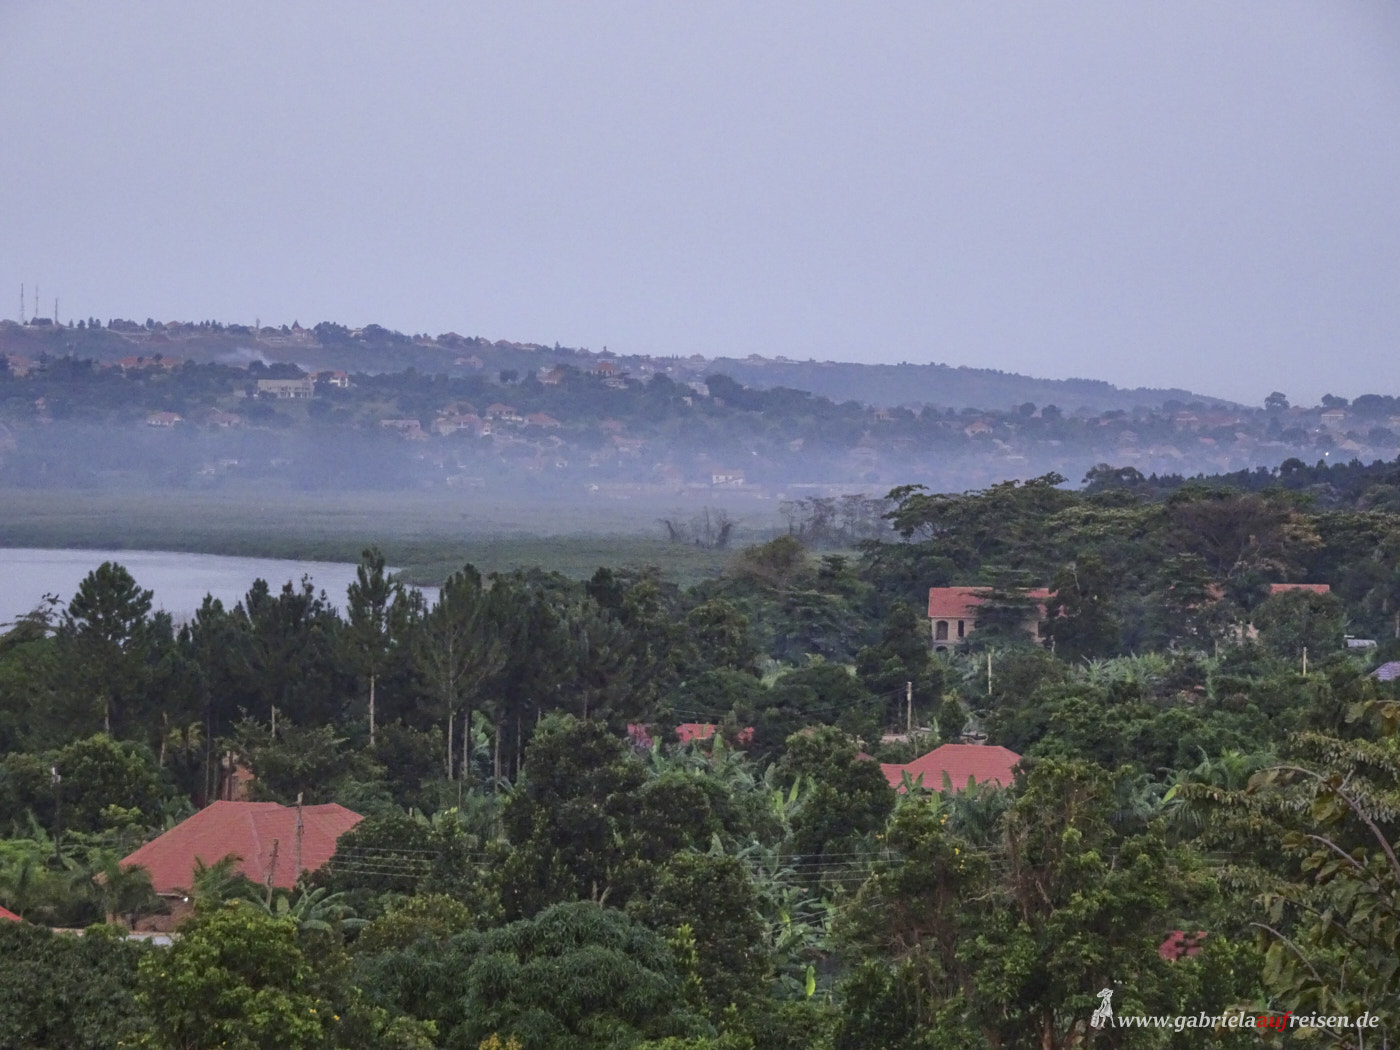 landscape at Lake Victoria